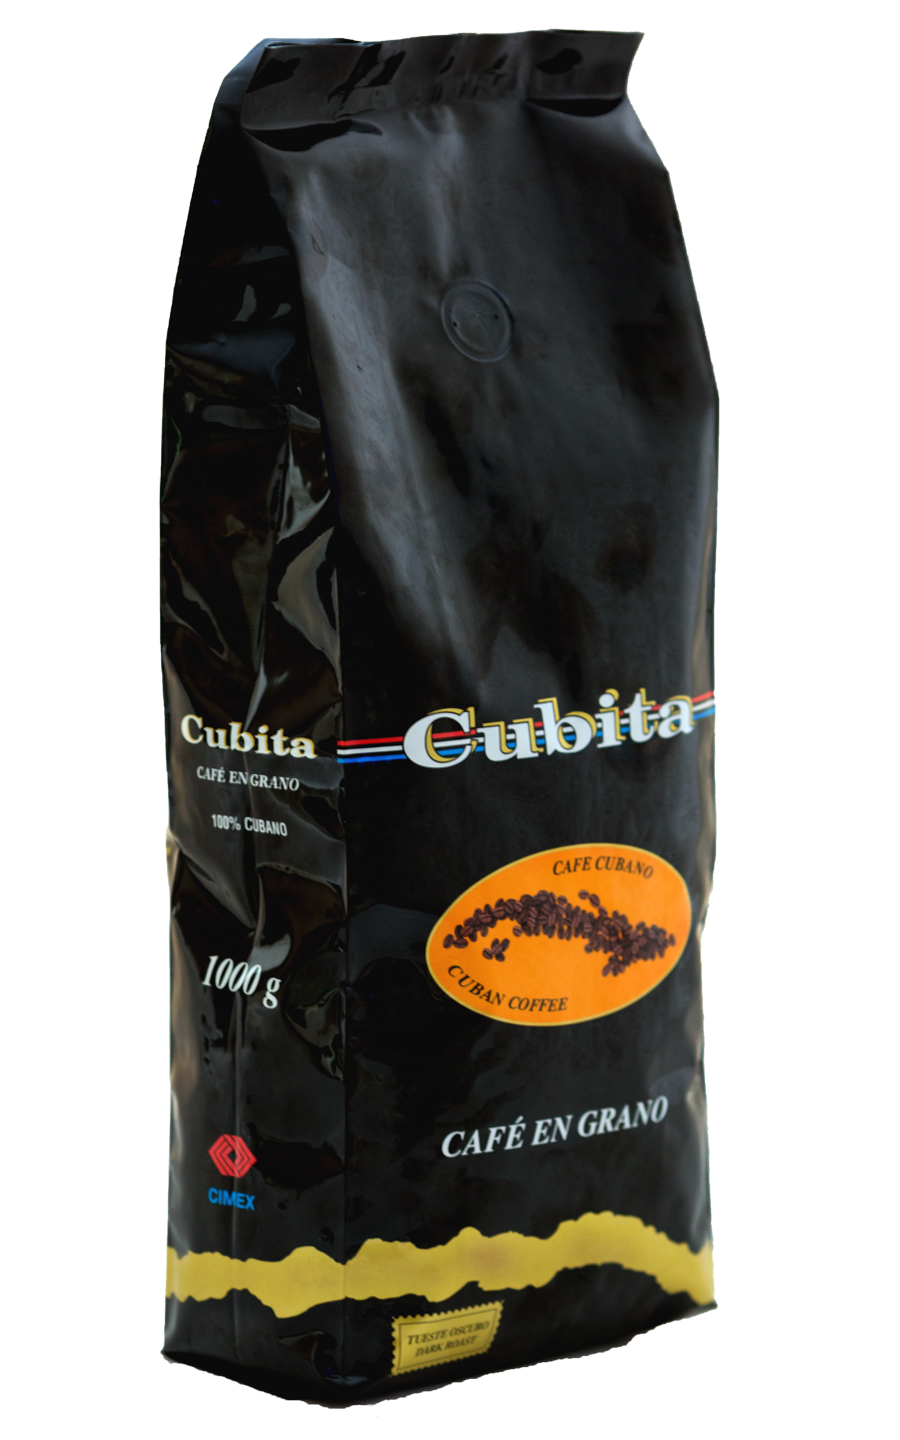 Кубинский кофе в зернах